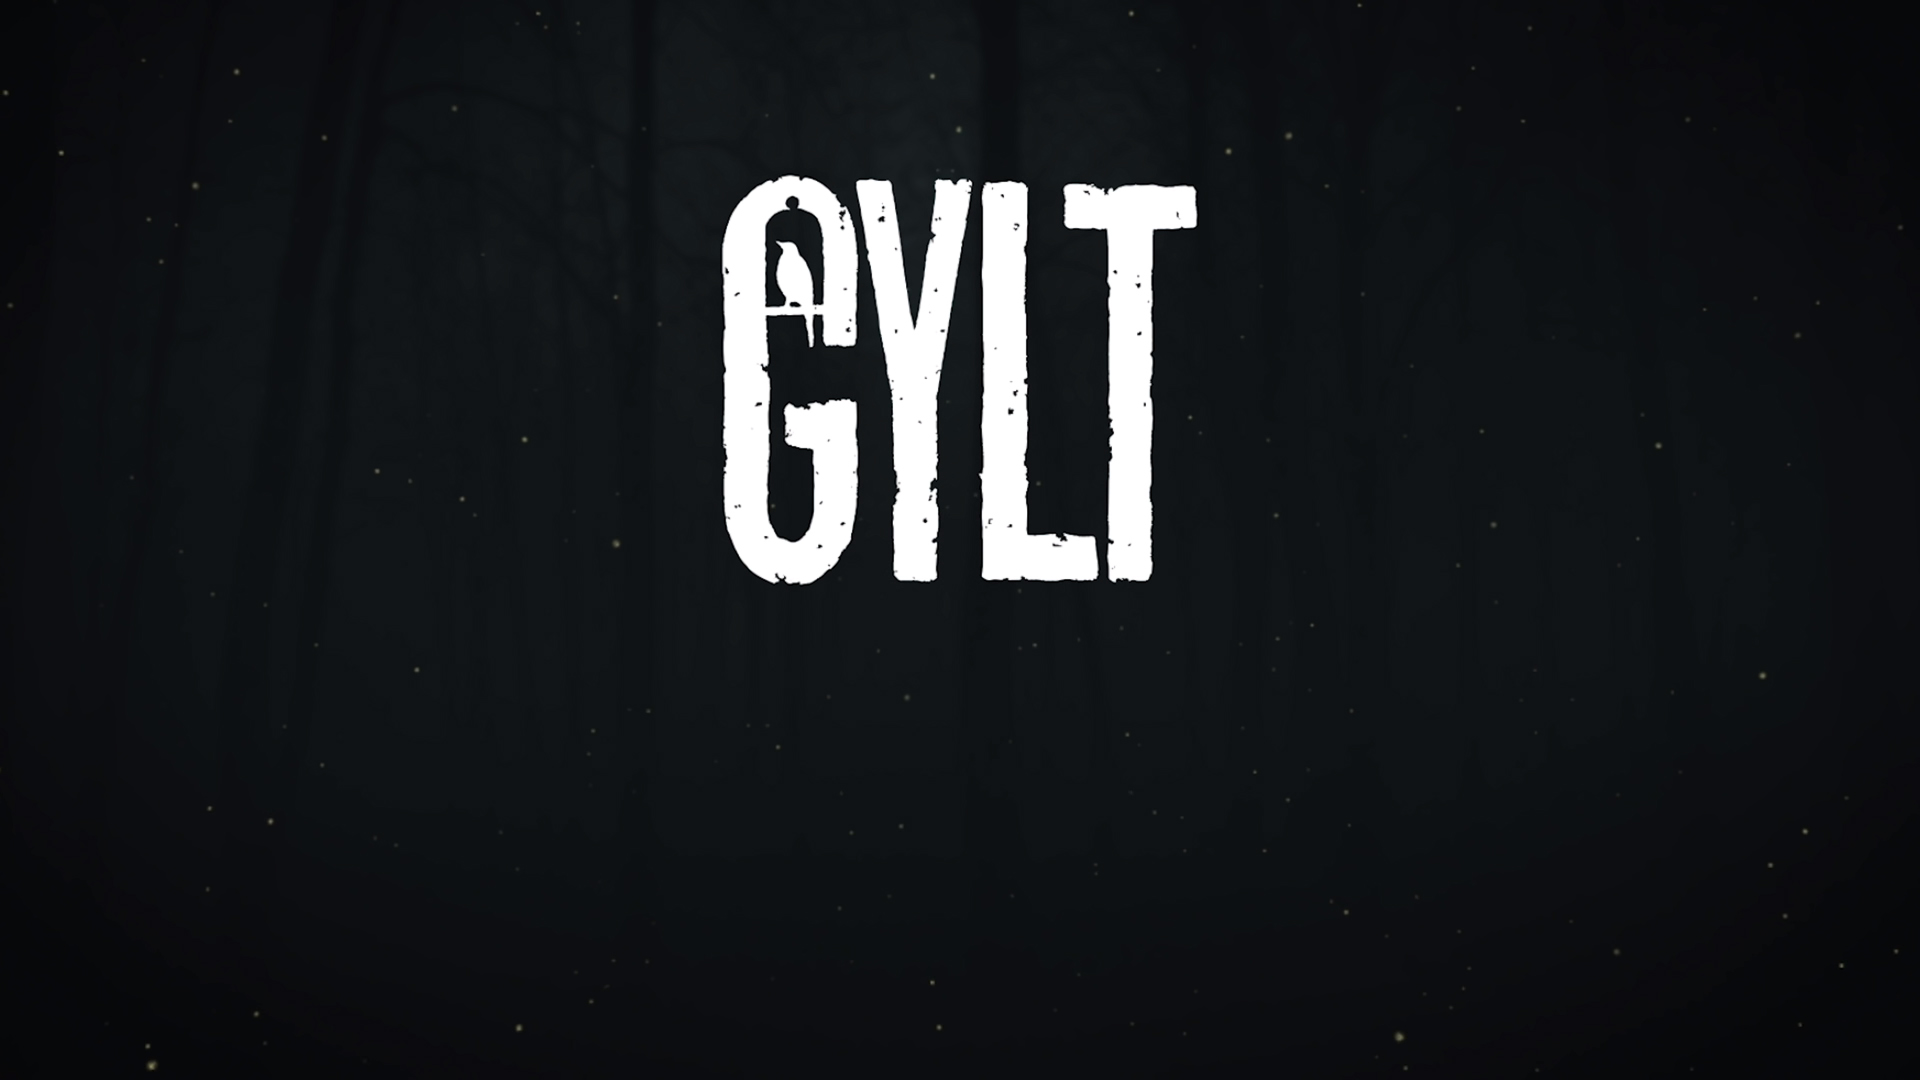 gylt ending explained